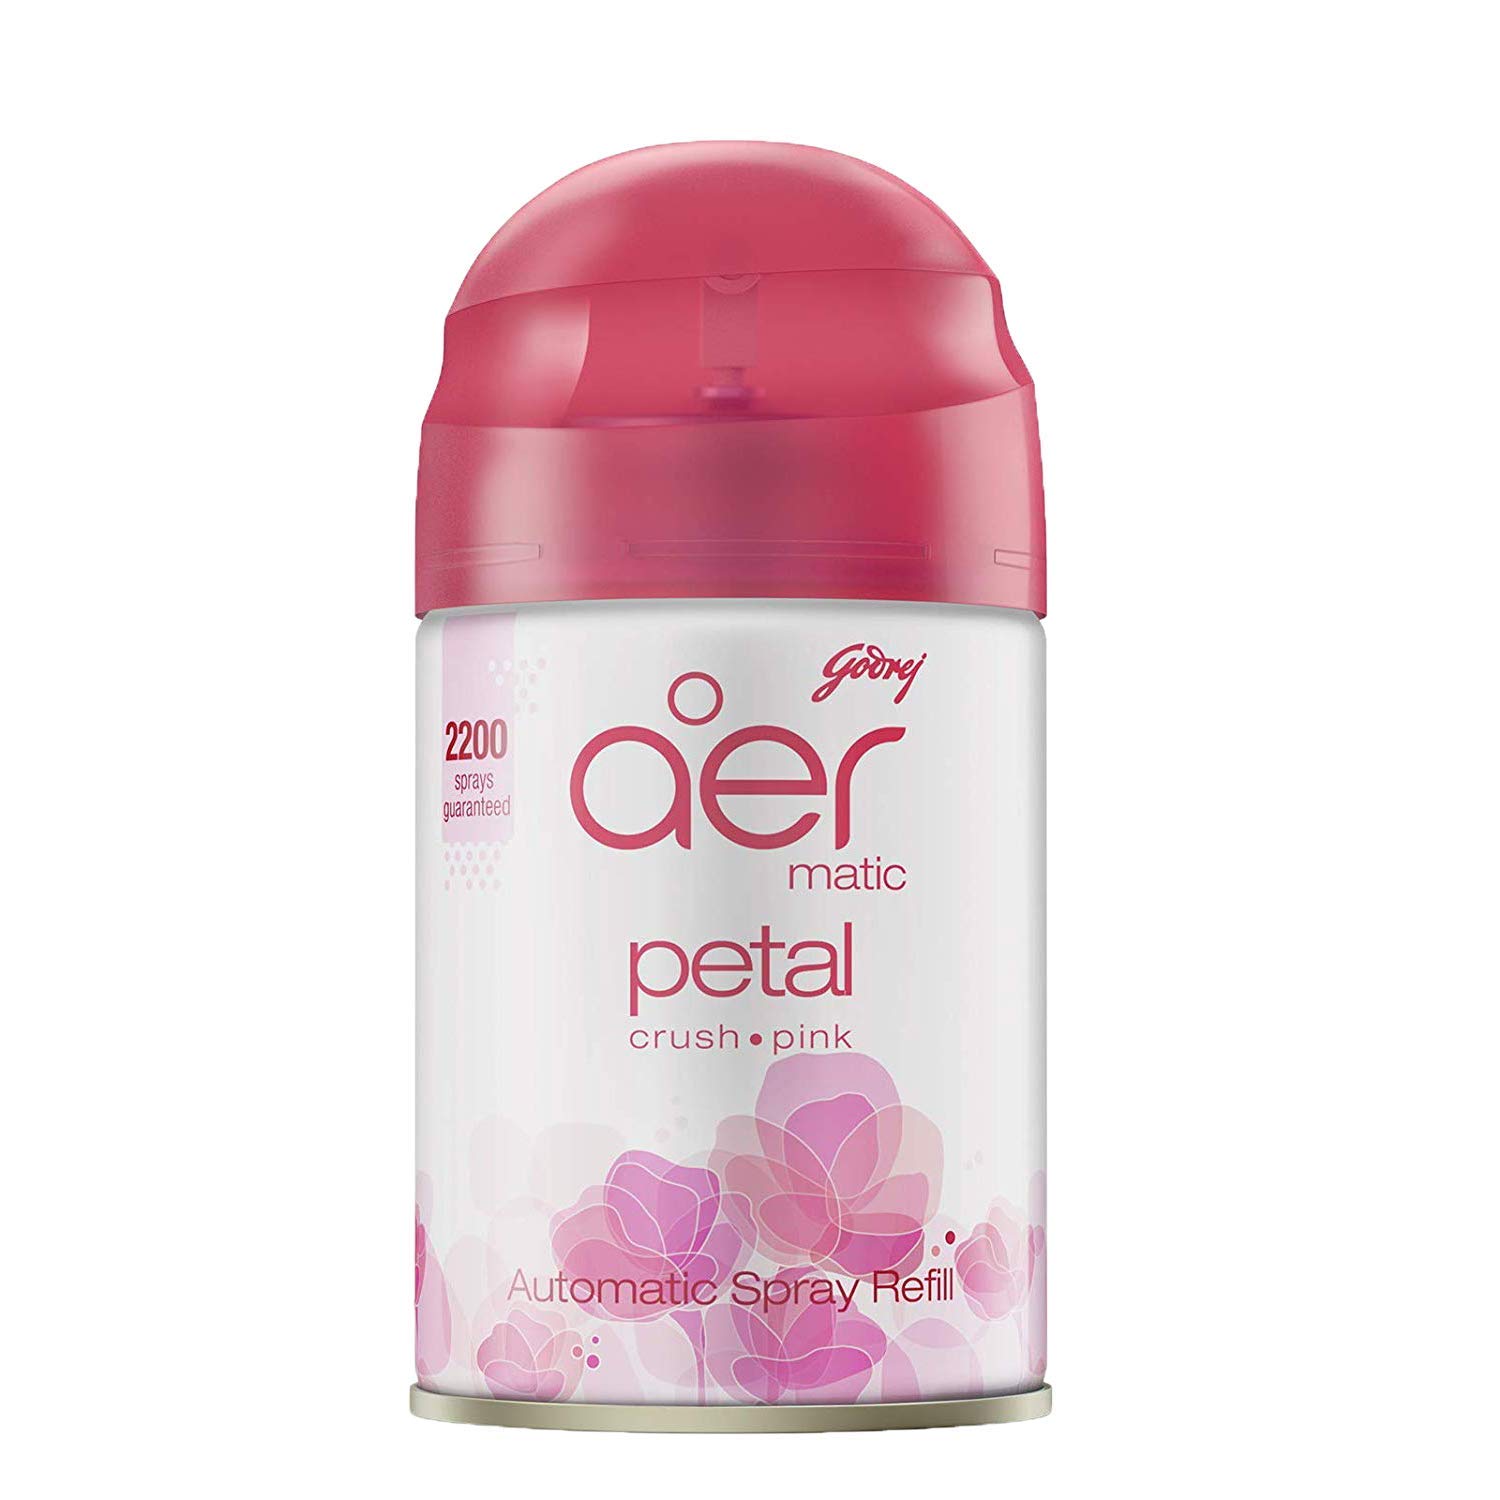 Godrej aer matic Petal Crush Pink Refill Home Fragrances